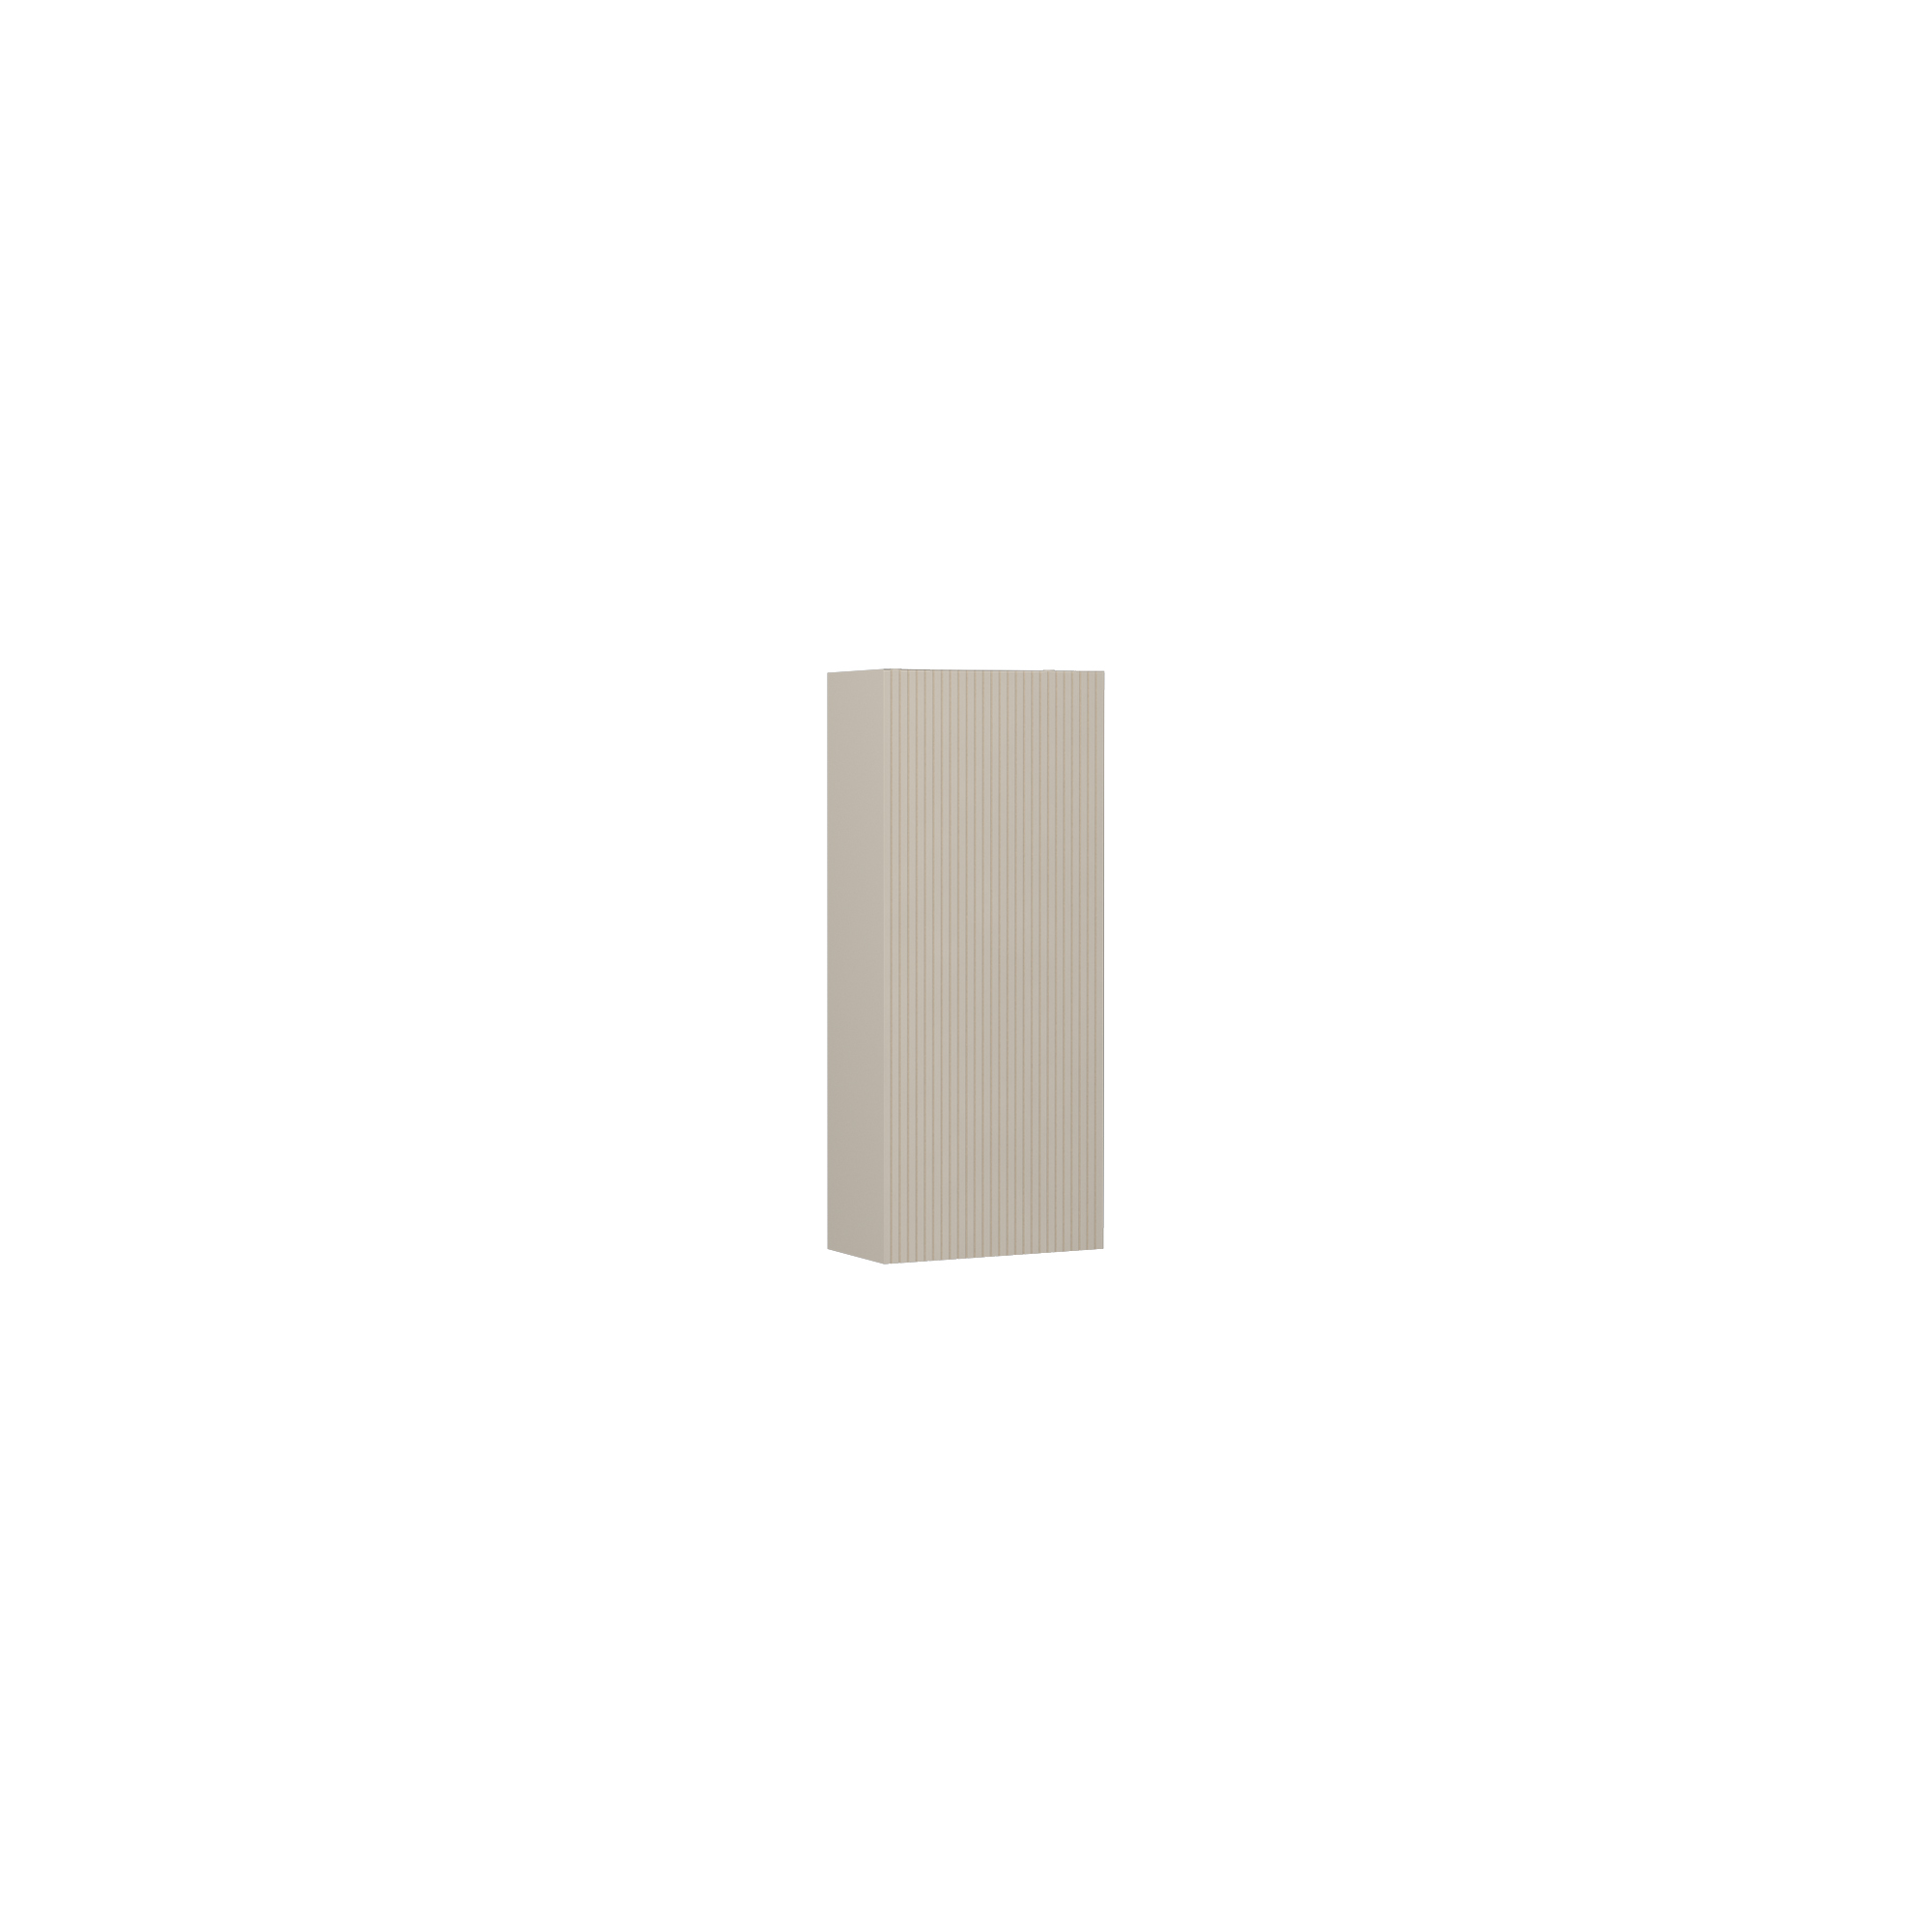 Infinity Washbasin Cabinet Cream, with Ivory Washbasin 51"